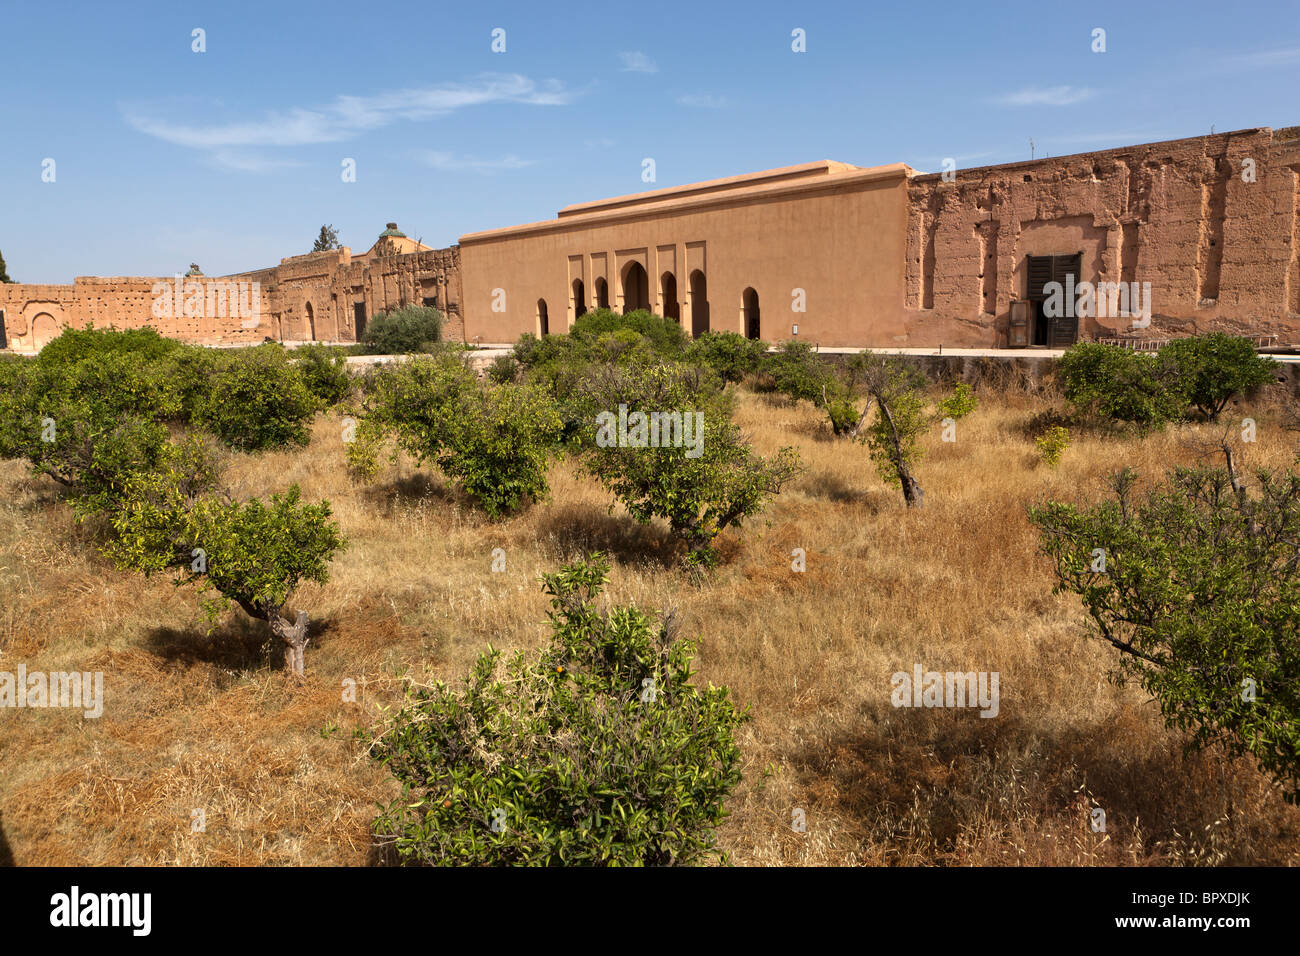 Ruines du palais El Badi, Marrakech (Marrakech), le Maroc, l'Afrique du Nord Banque D'Images